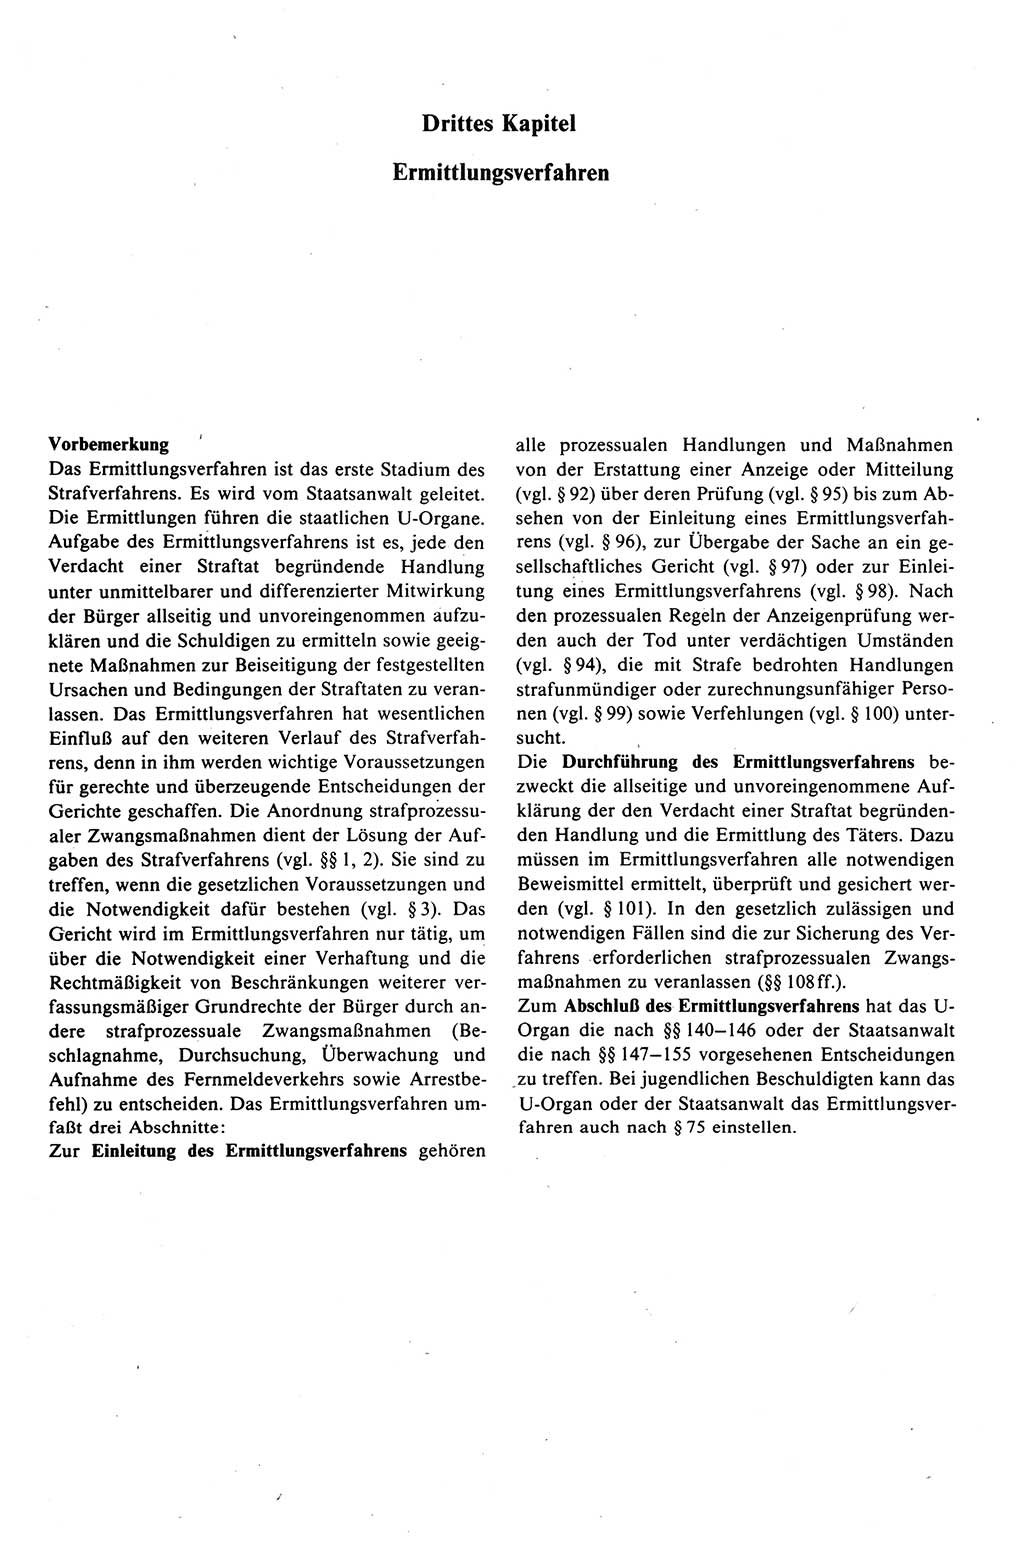 Strafprozeßrecht der DDR (Deutsche Demokratische Republik), Kommentar zur Strafprozeßordnung (StPO) 1989, Seite 121 (Strafprozeßr. DDR Komm. StPO 1989, S. 121)